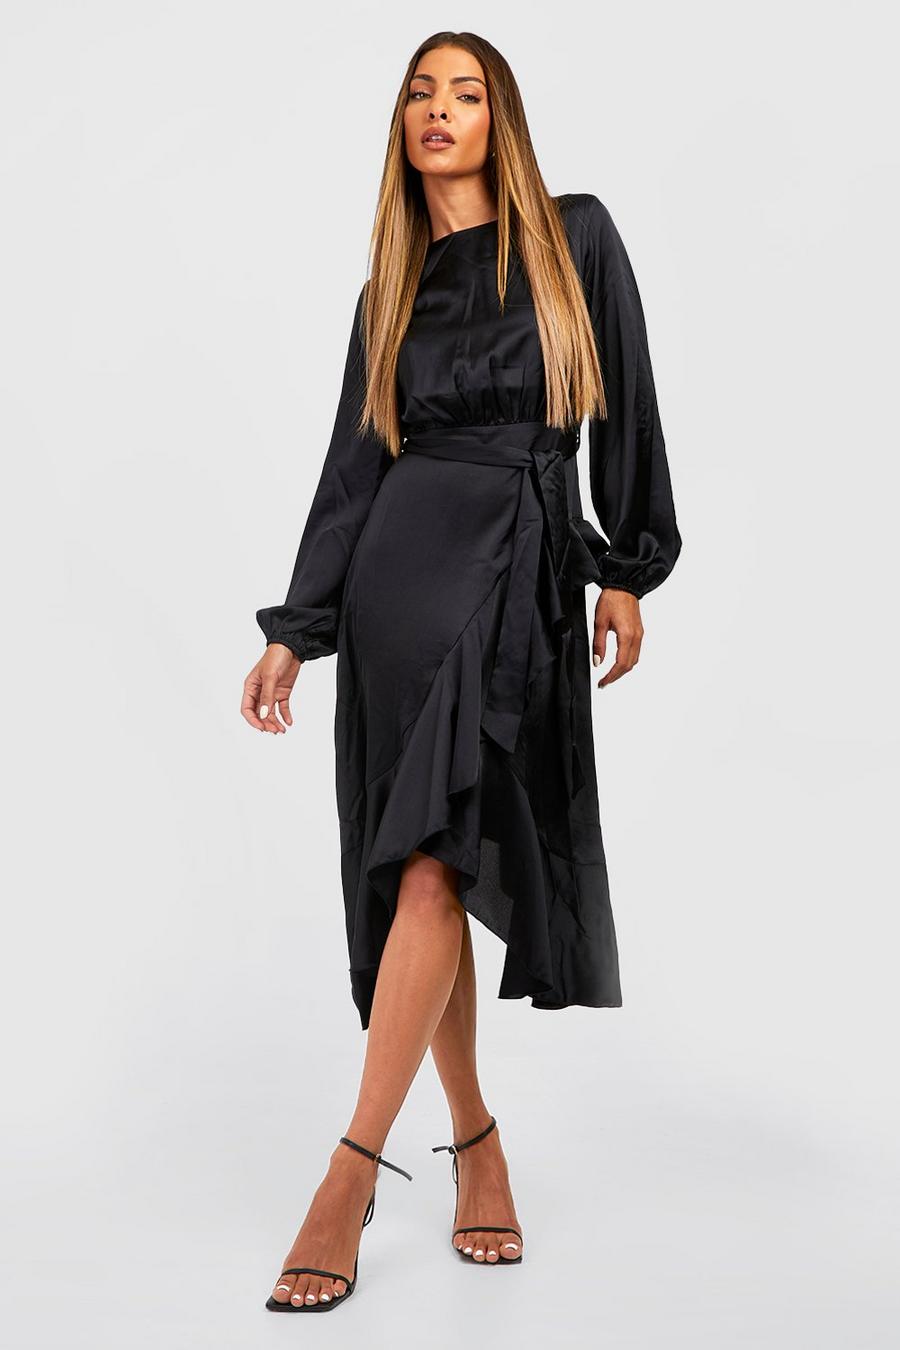 שחור negro שמלת סאטן מידי עם מעטפת, שרוולים ארוכים וסלסול